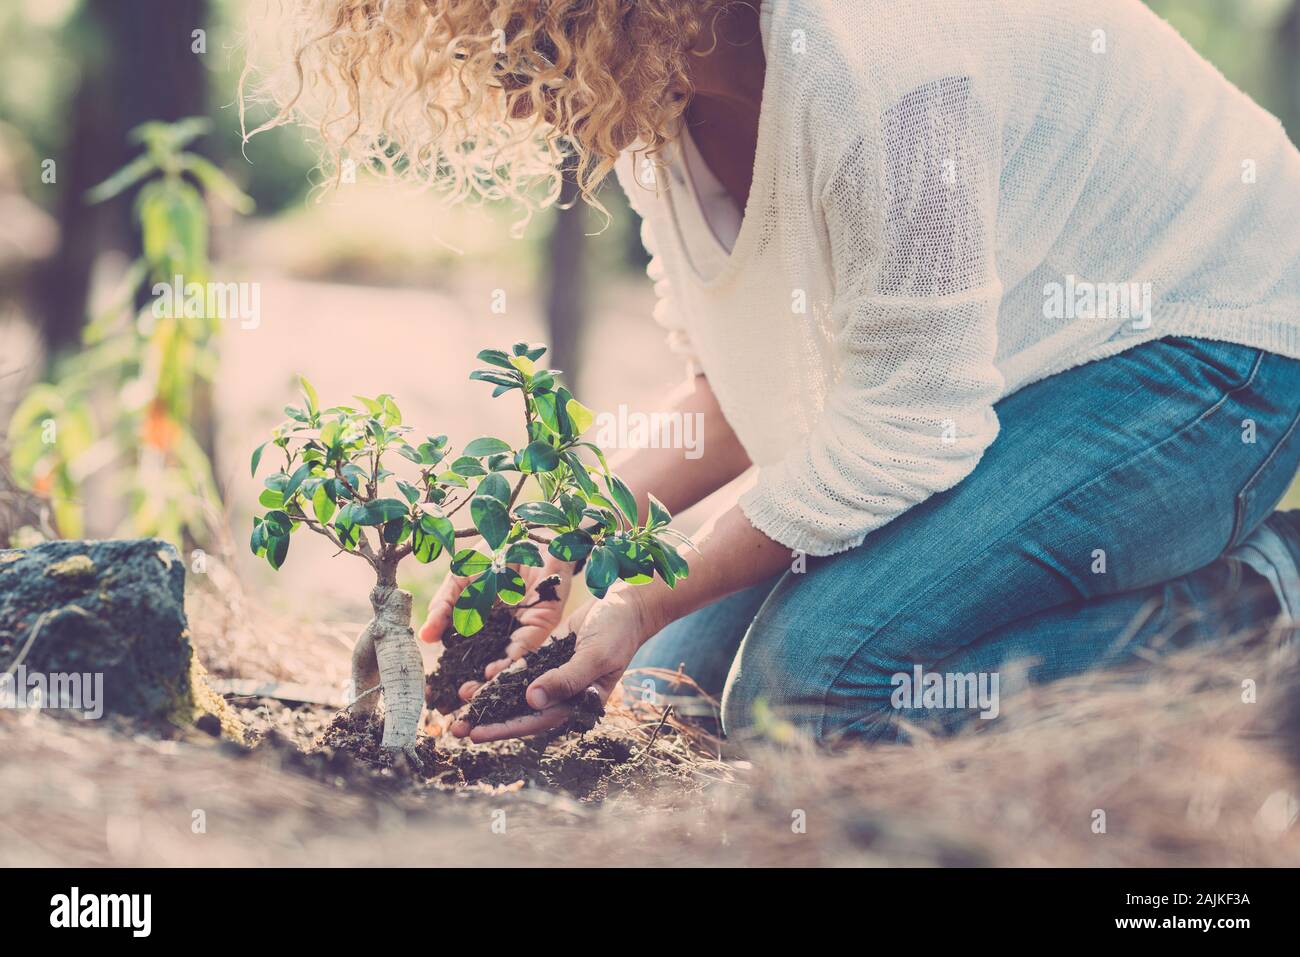 Umwelt und die Sorge für die Erde und die Natur Wald Konzept mit Lady seeding einen neuen Baum auf dem Holz Boden - Speichern Tag der Erde lifestyle Menschen Stockfoto